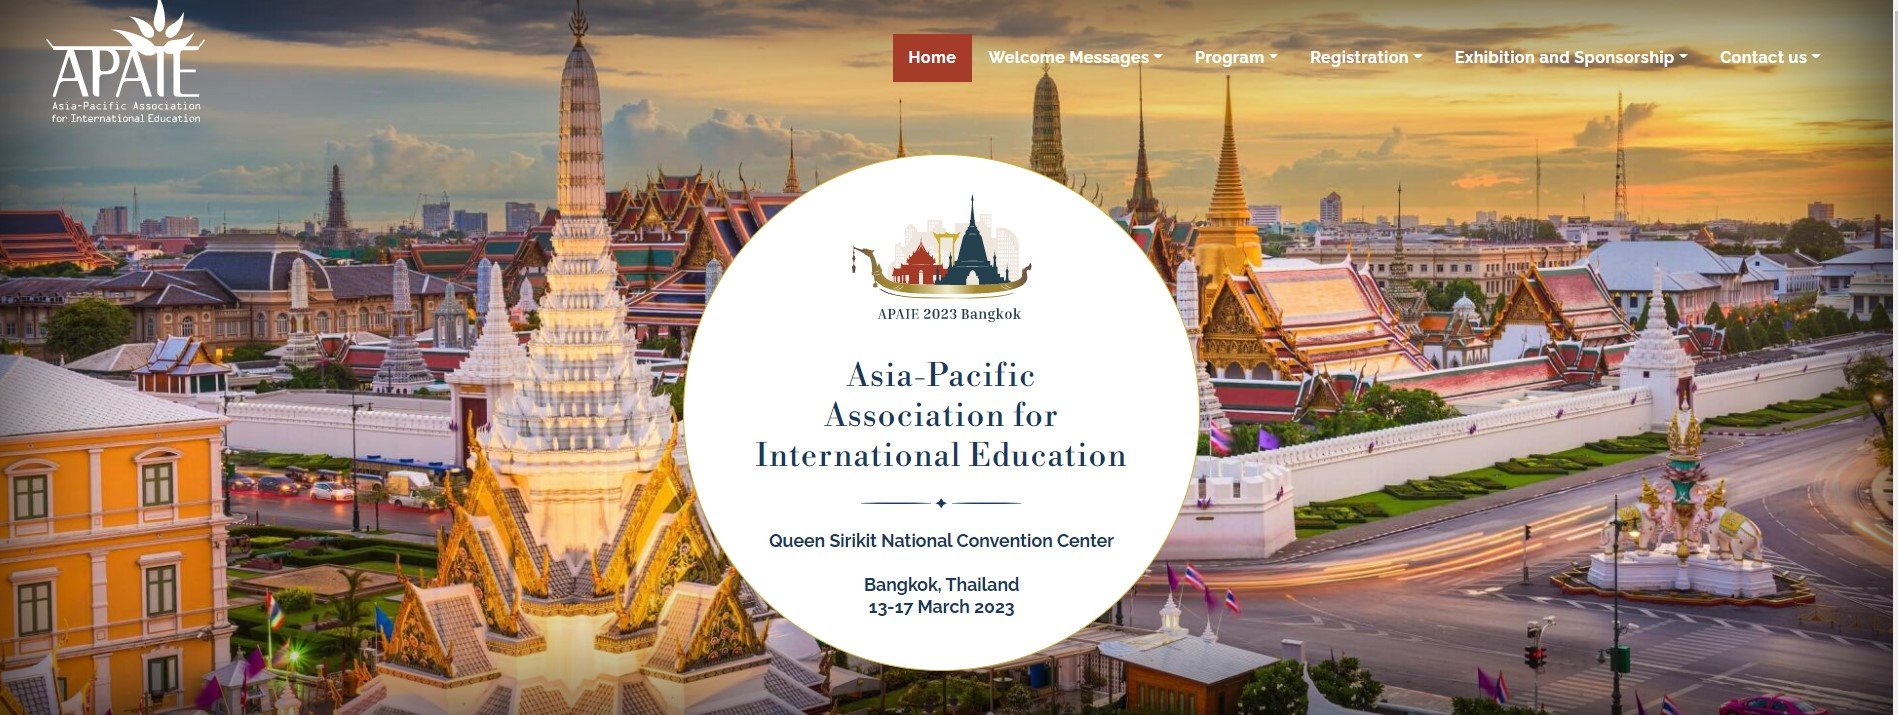 ขอเชิญเข้าร่วมประชุมและเข้าร่วมงานนิทรรศการการศึกษา The Asia-Pacific Association for International Education (APAIE) Conference and Exhibition